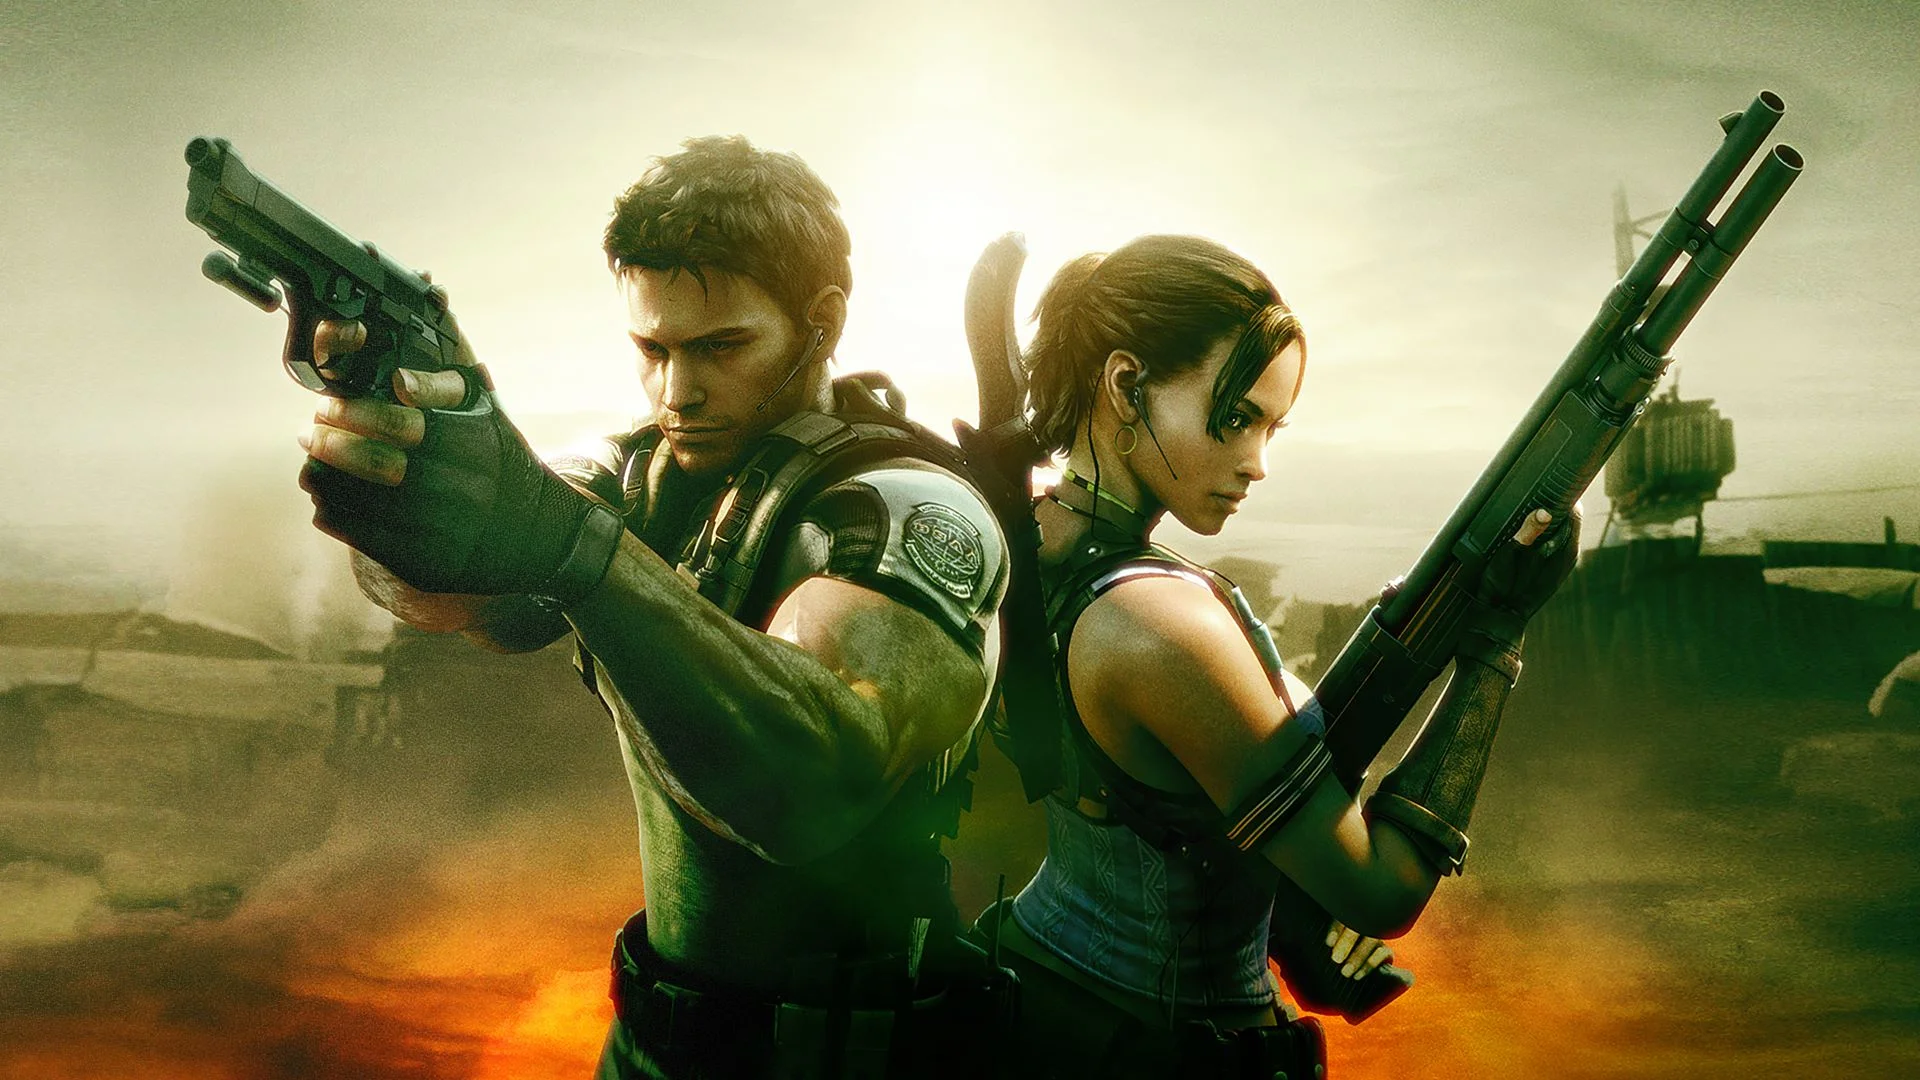 Европейский релиз Resident Evil 5 состоялся ровно 10 лет назад — 13 марта 2009 года. На «Канобу» не было рецензии на эту, без сомнения, выдающуюся игру, так что юбилей — отличный повод это исправить.